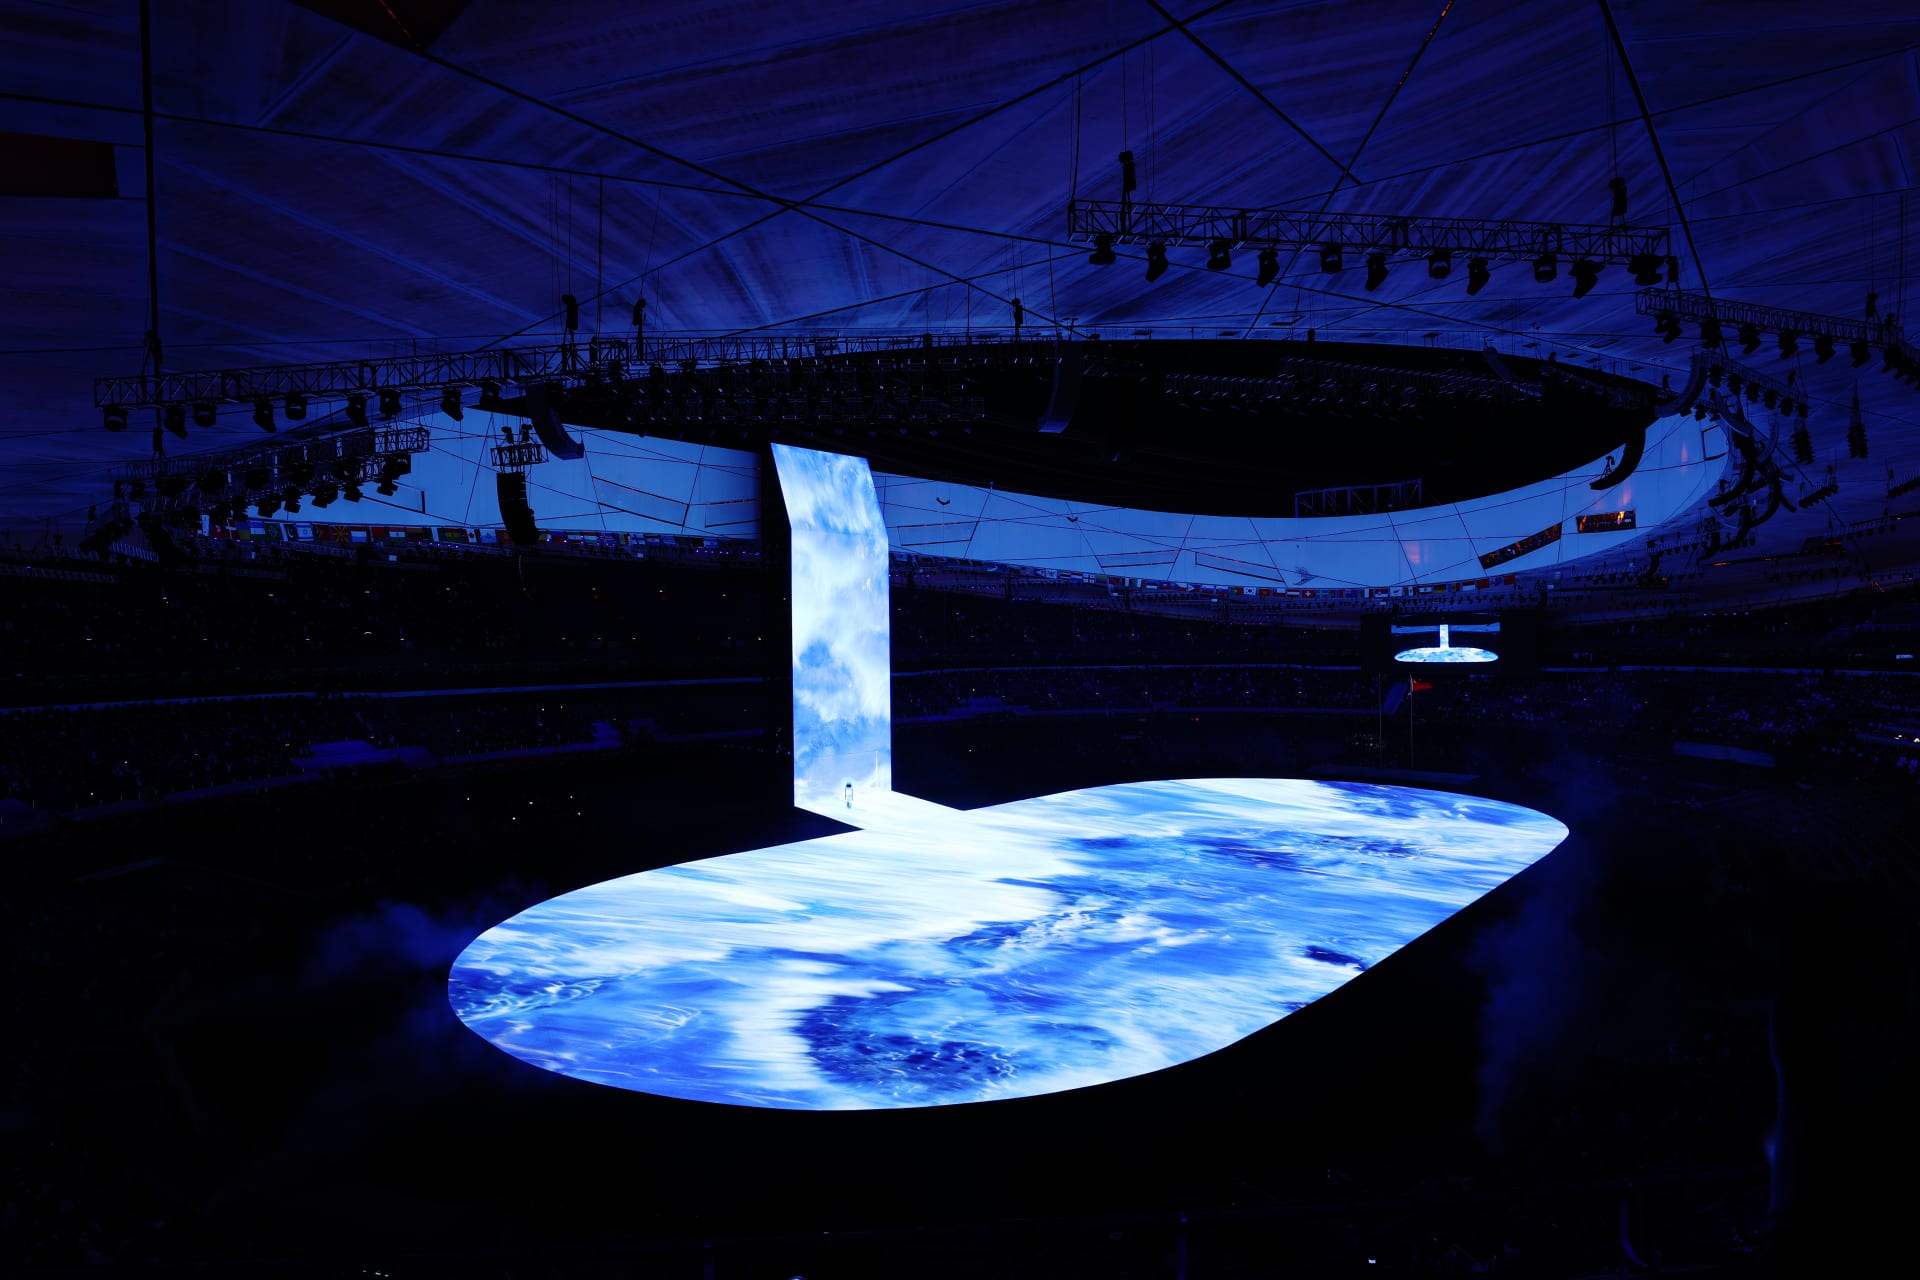 فنان صيني ساعد بتصميم ملعب بكين الأولمبي "عش الطائر"..لكن ما سبب ندمه؟